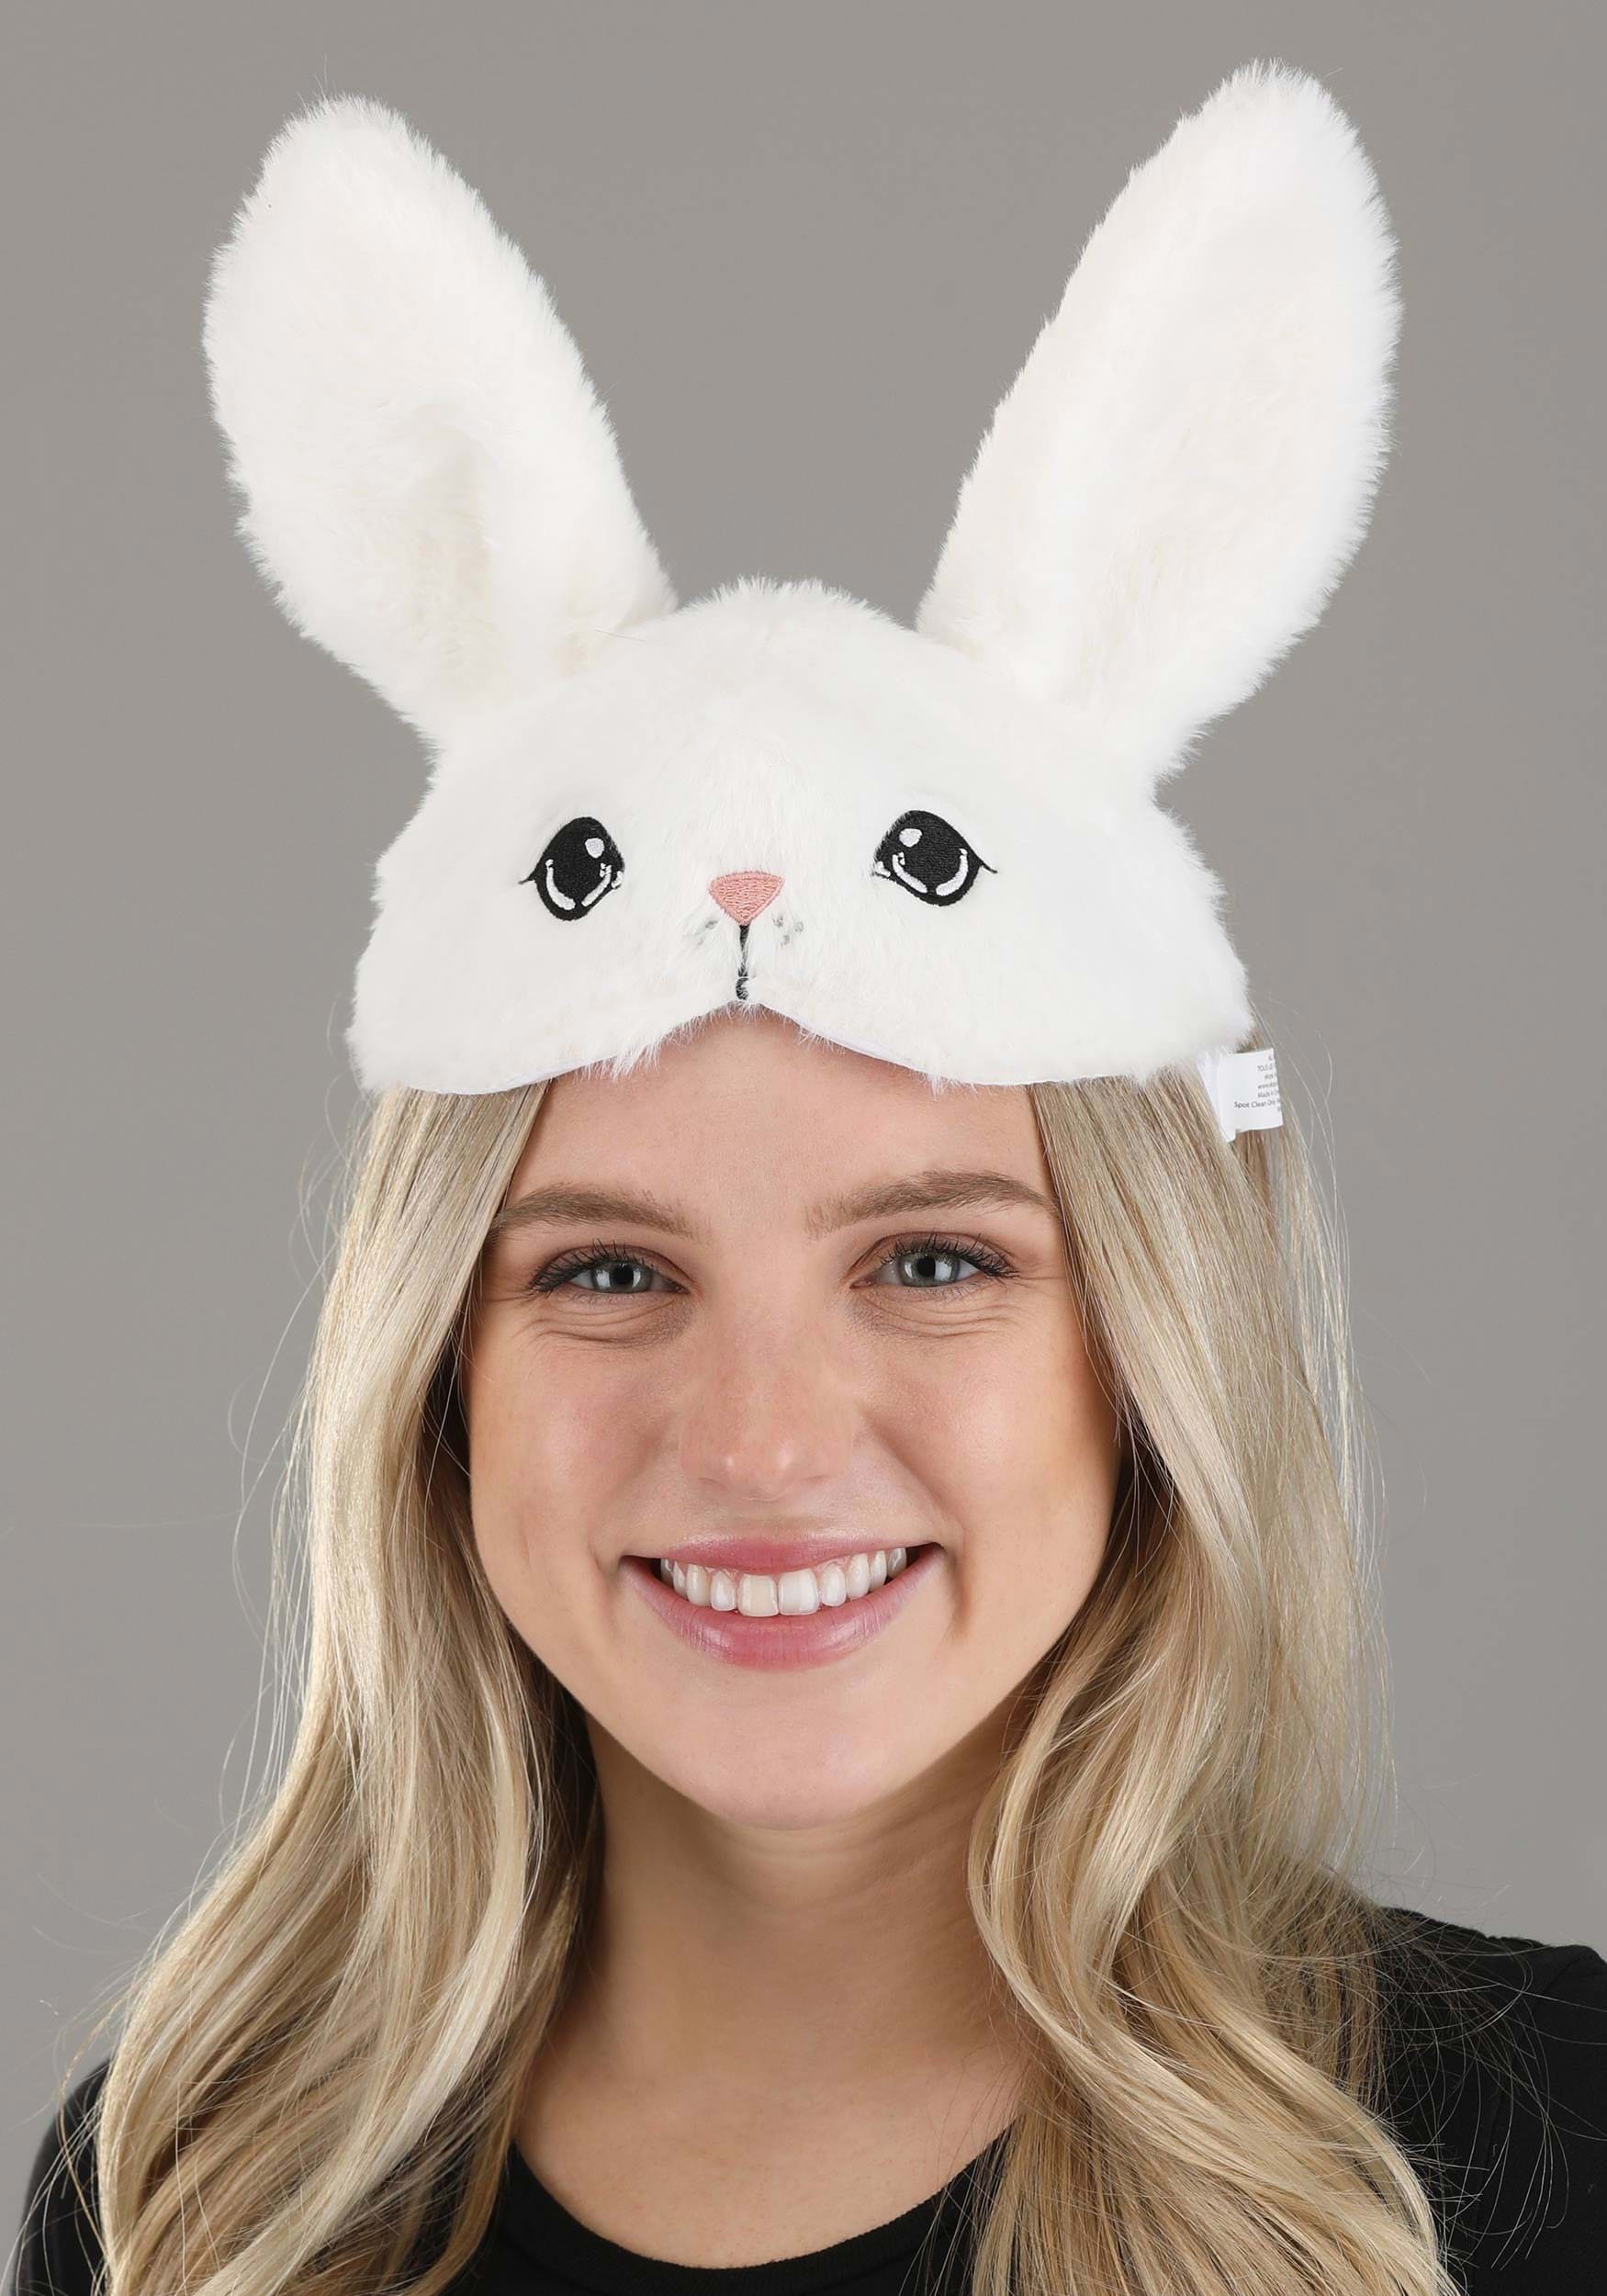 White Bunny Face Headband